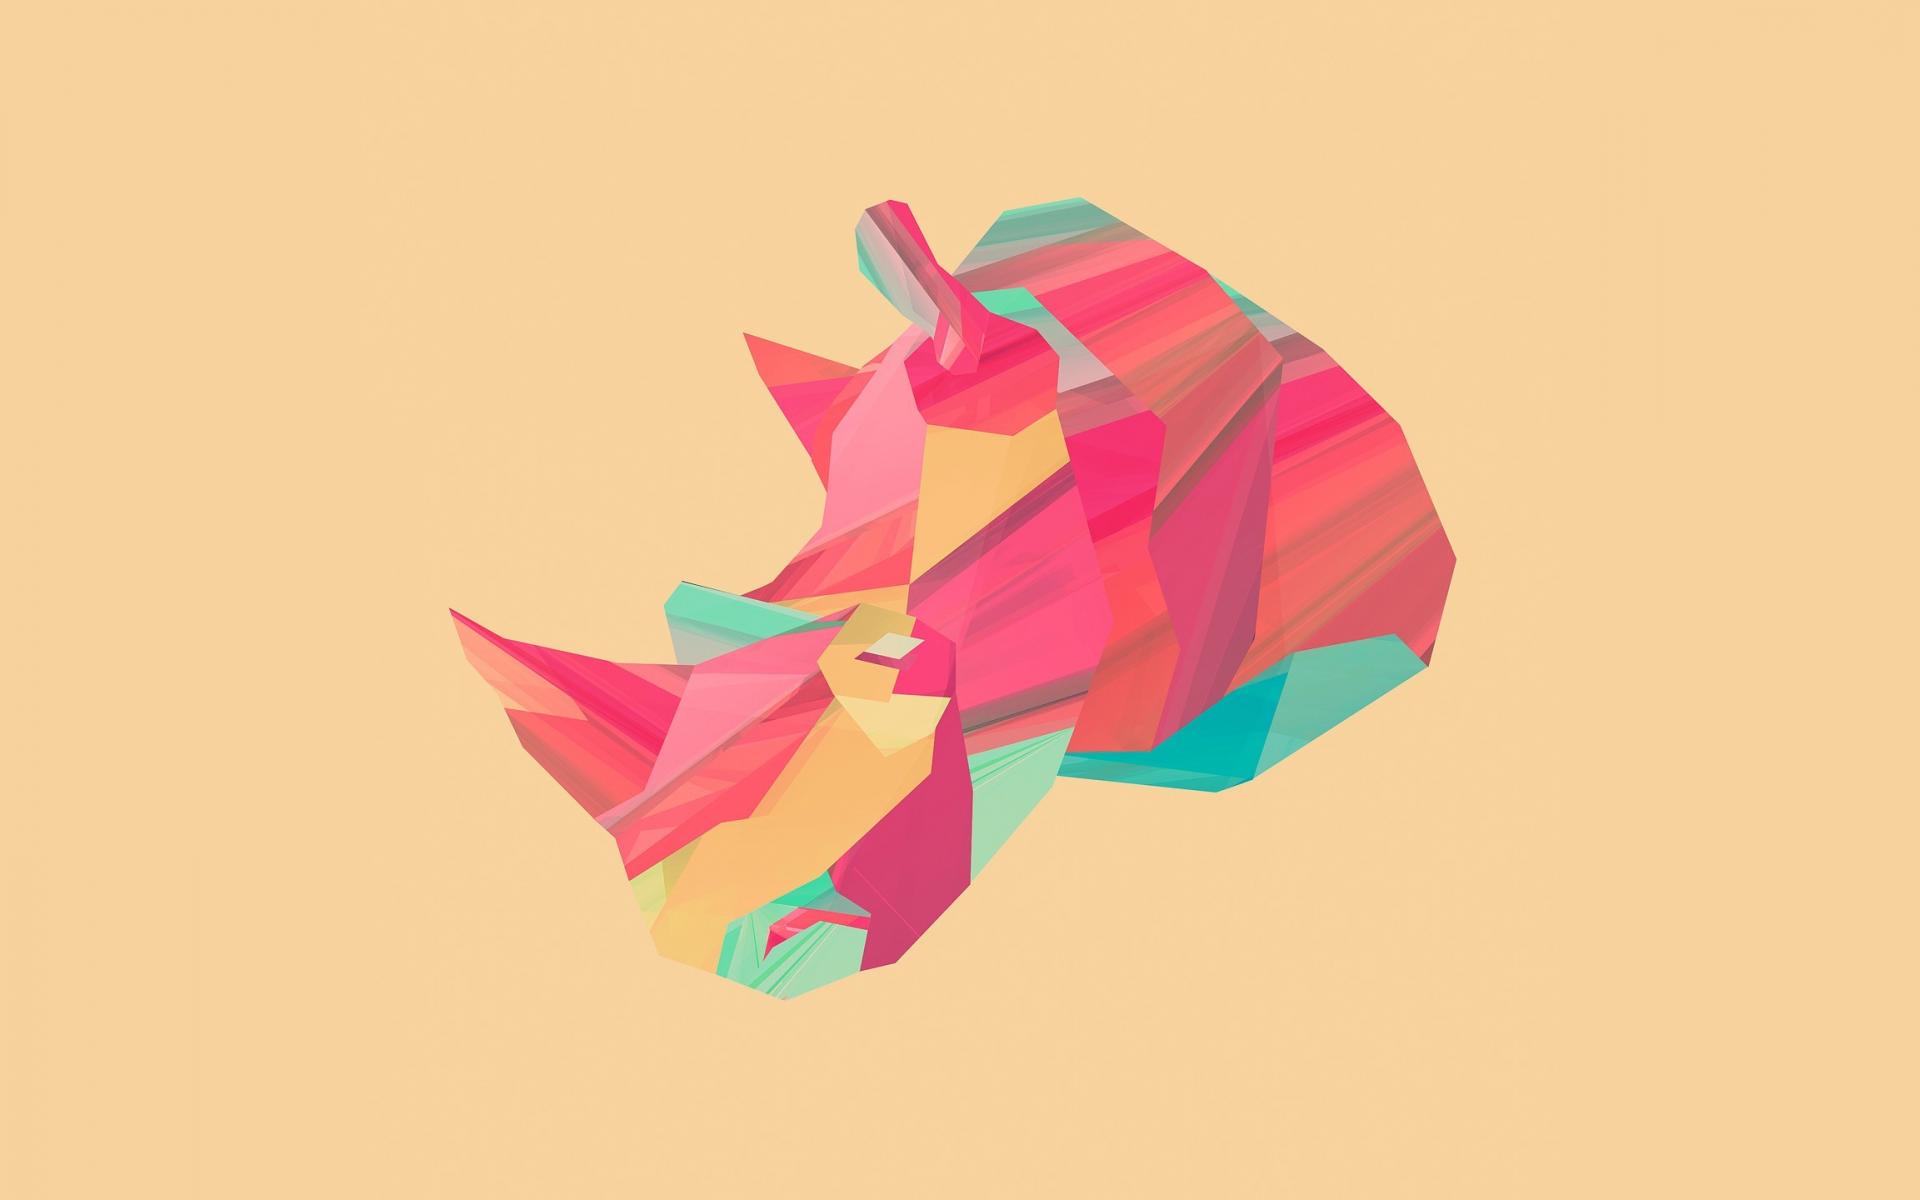 Justin Maller Abstract Animals Digital Art Rhinoceros Wallpaper